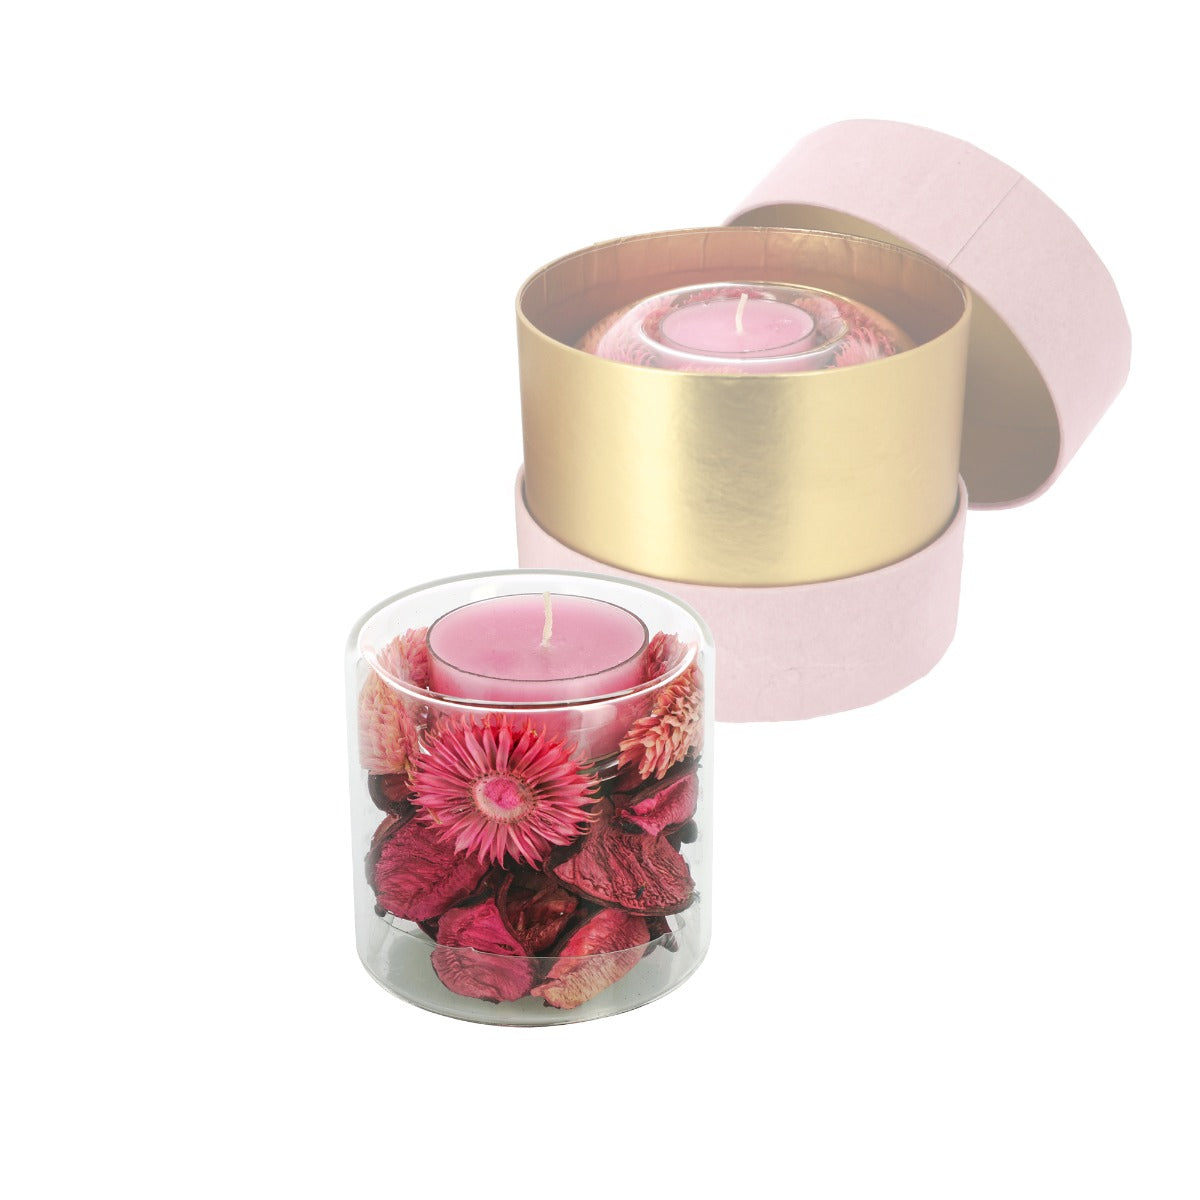 Bomboniera candela cilindro rosa con pot-pourri 